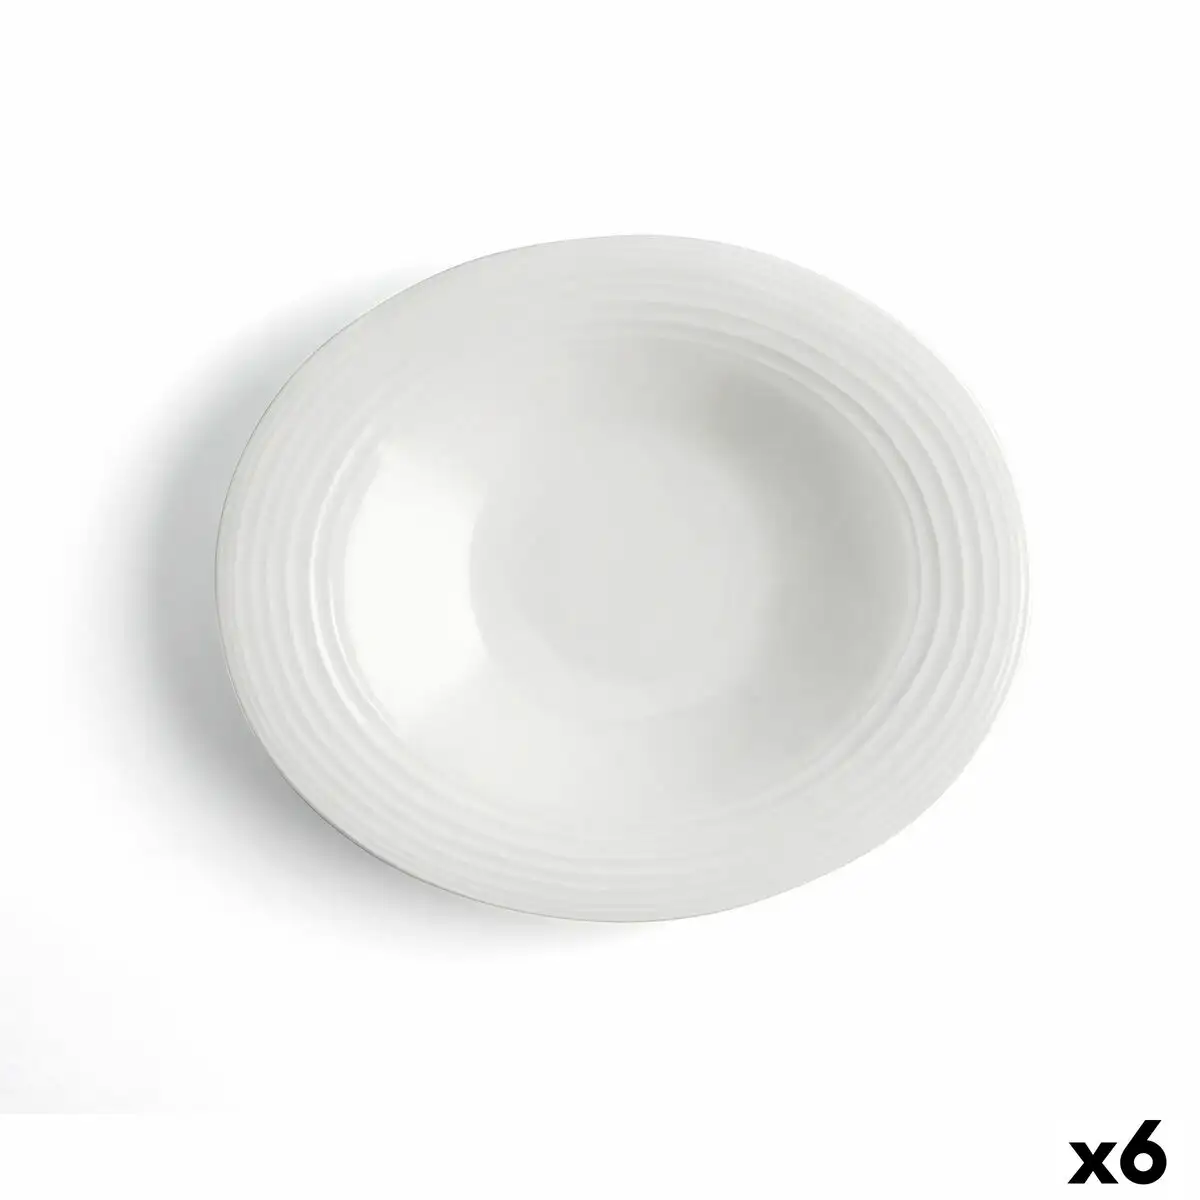 Assiette creuse ariane a bordo ceramique blanc o 29 cm 6 unites _3469. DIAYTAR SENEGAL - Votre Oasis de Shopping en Ligne. Explorez notre boutique et découvrez des produits qui ajoutent une touche de magie à votre quotidien.